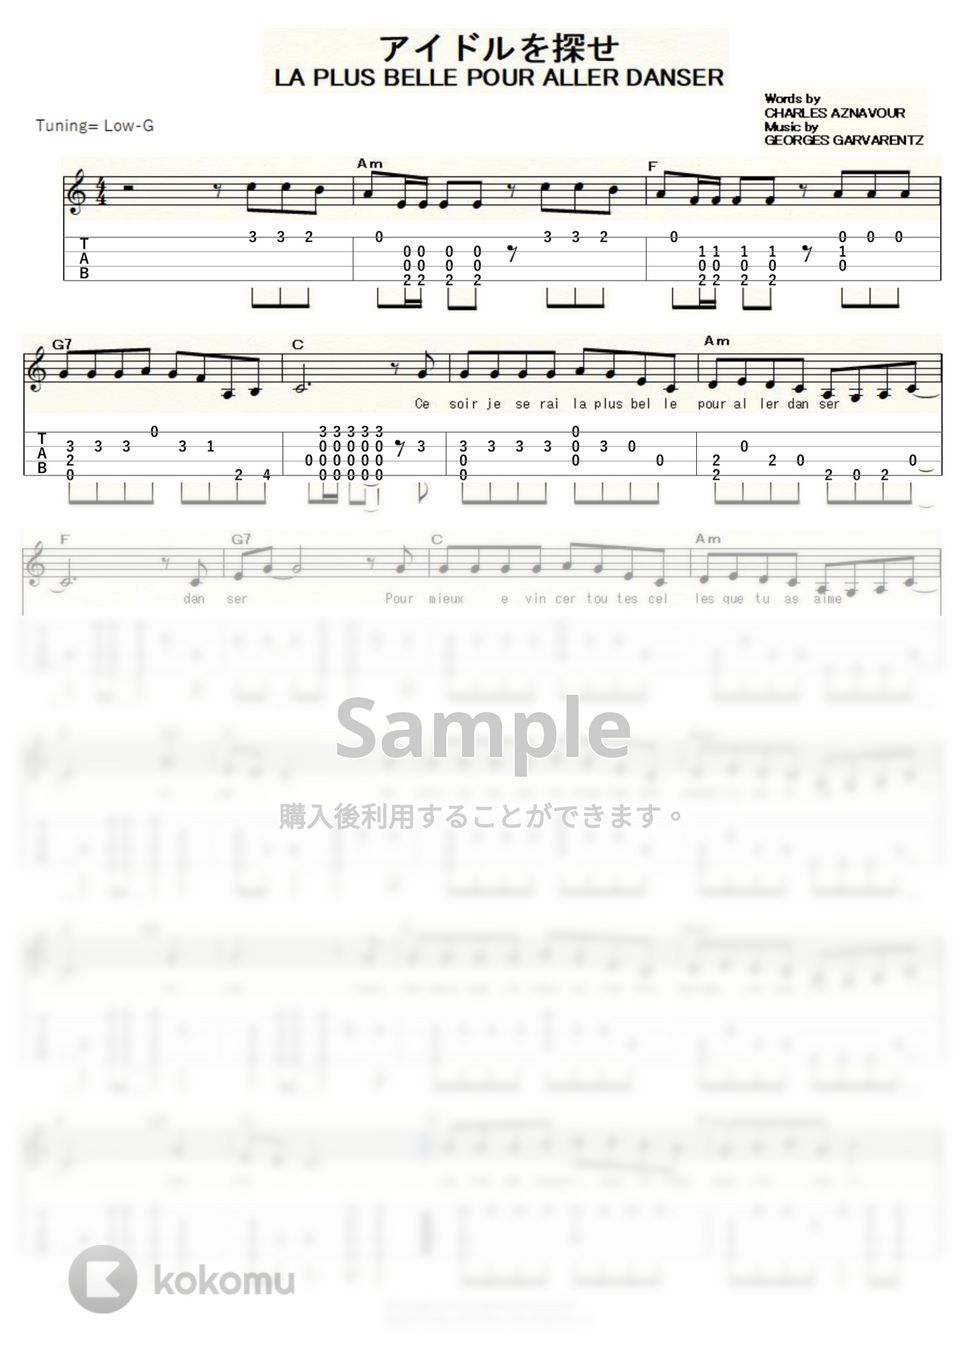 シルヴィ・バルタン - アイドルを探せ (ｳｸﾚﾚｿﾛ/Low-G/中級) by ukulelepapa